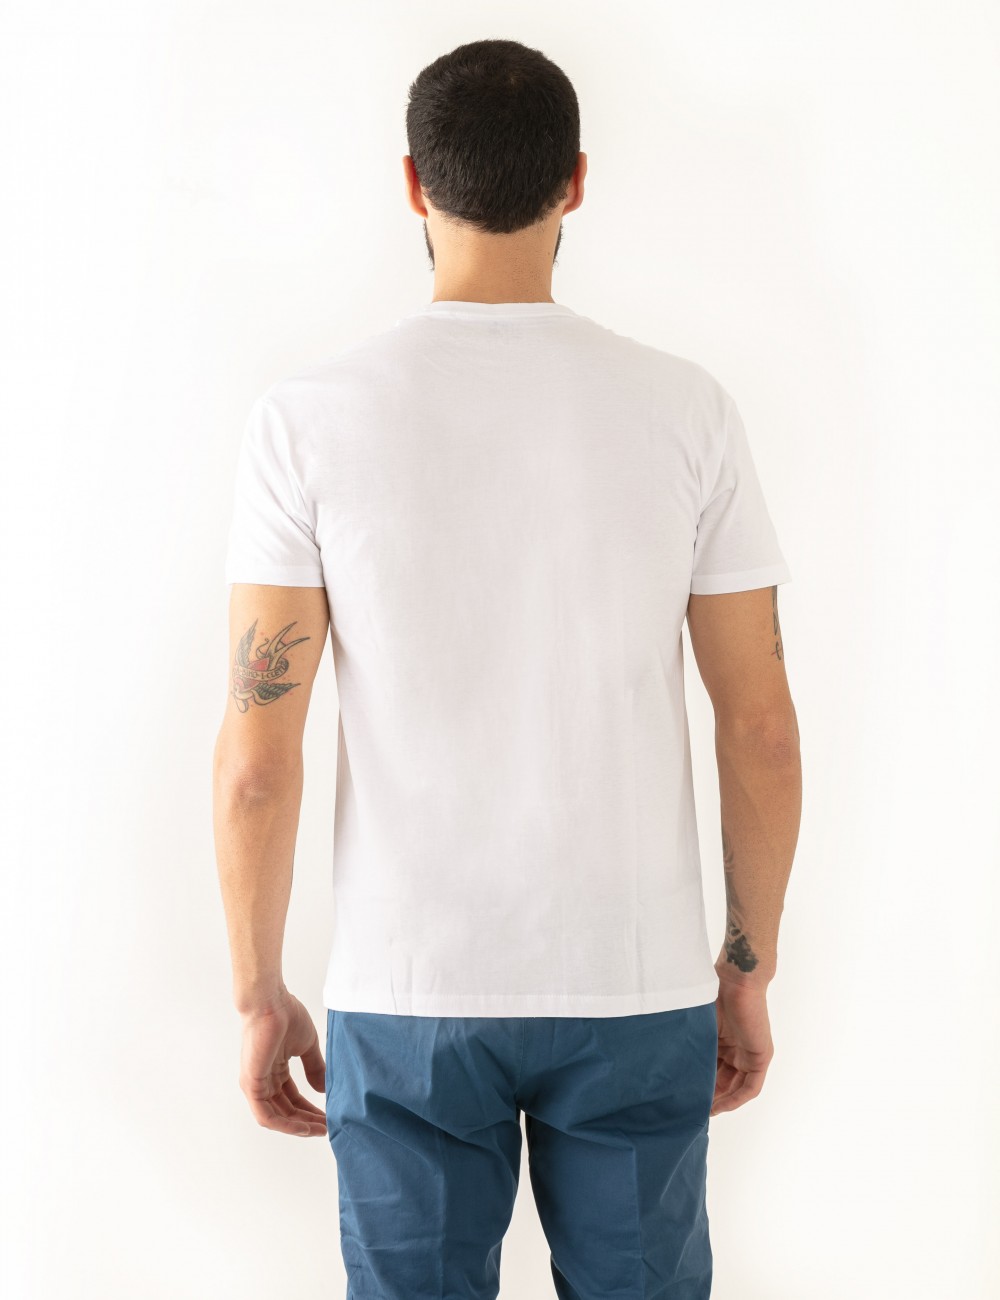 T-shirt "Zelo" stampa Martin Zelo in cotone indossata dettaglio retro